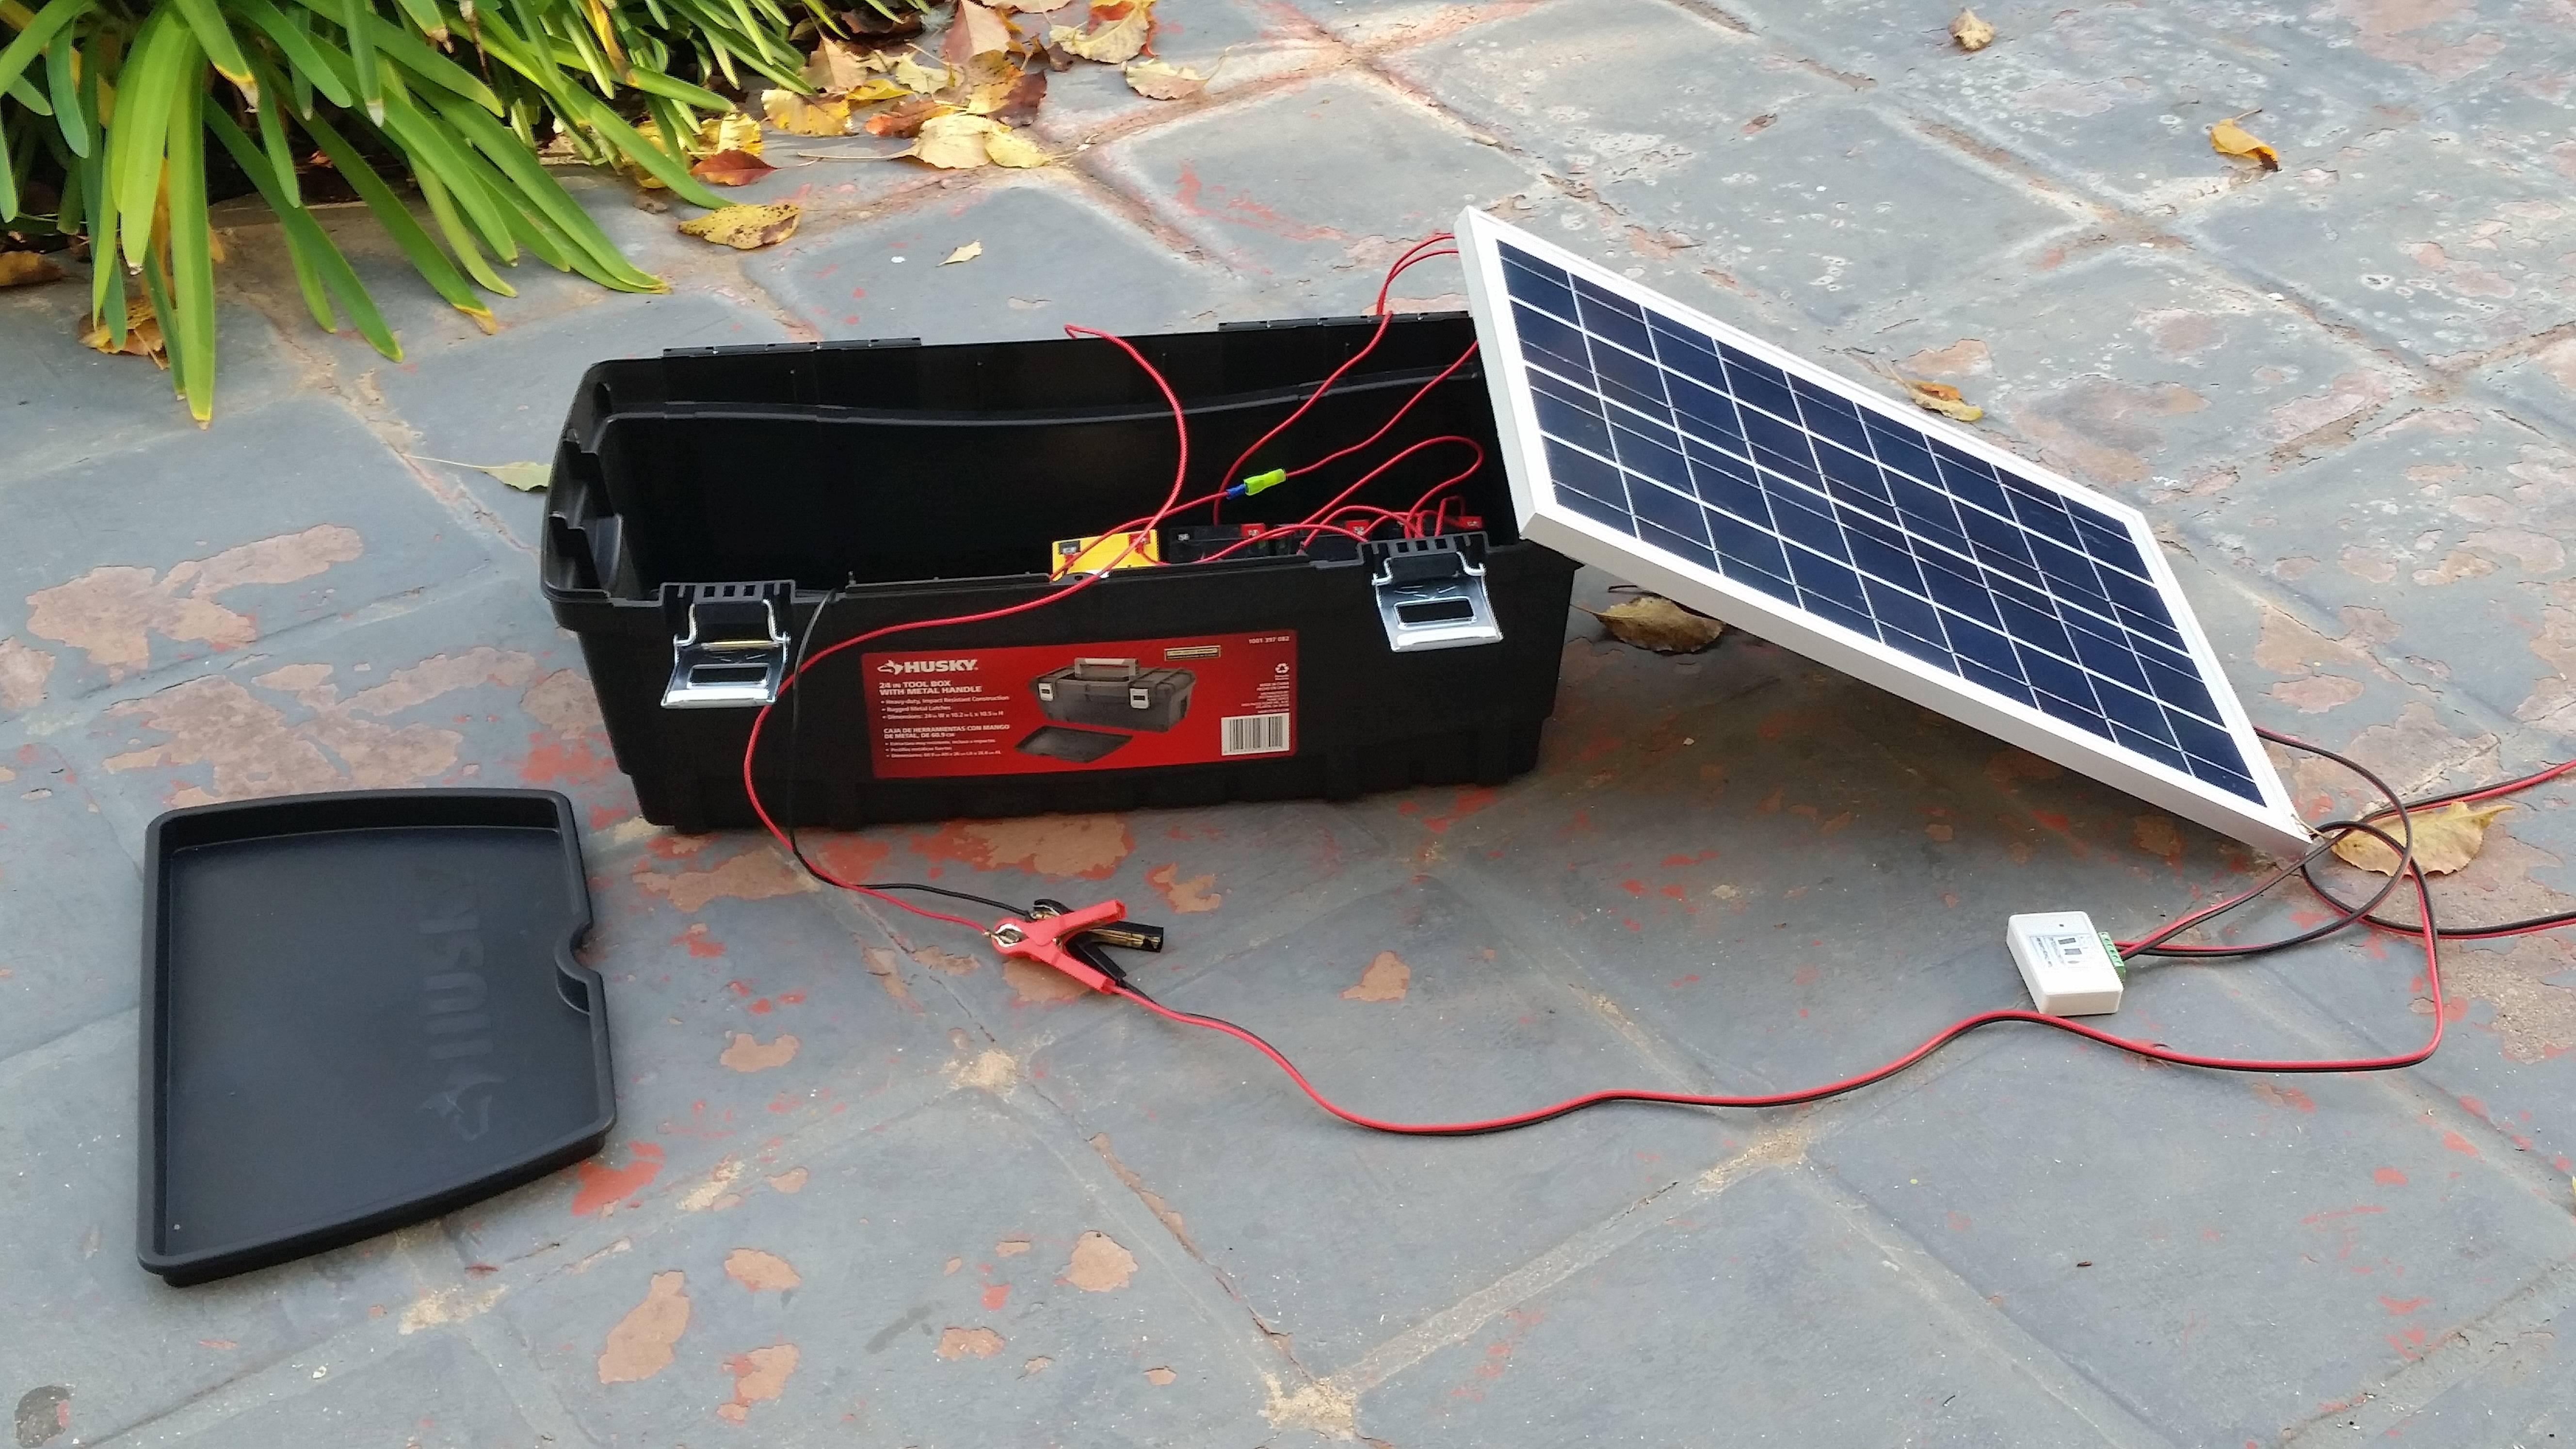 Солнечная батарея своими руками: варианты и примеры